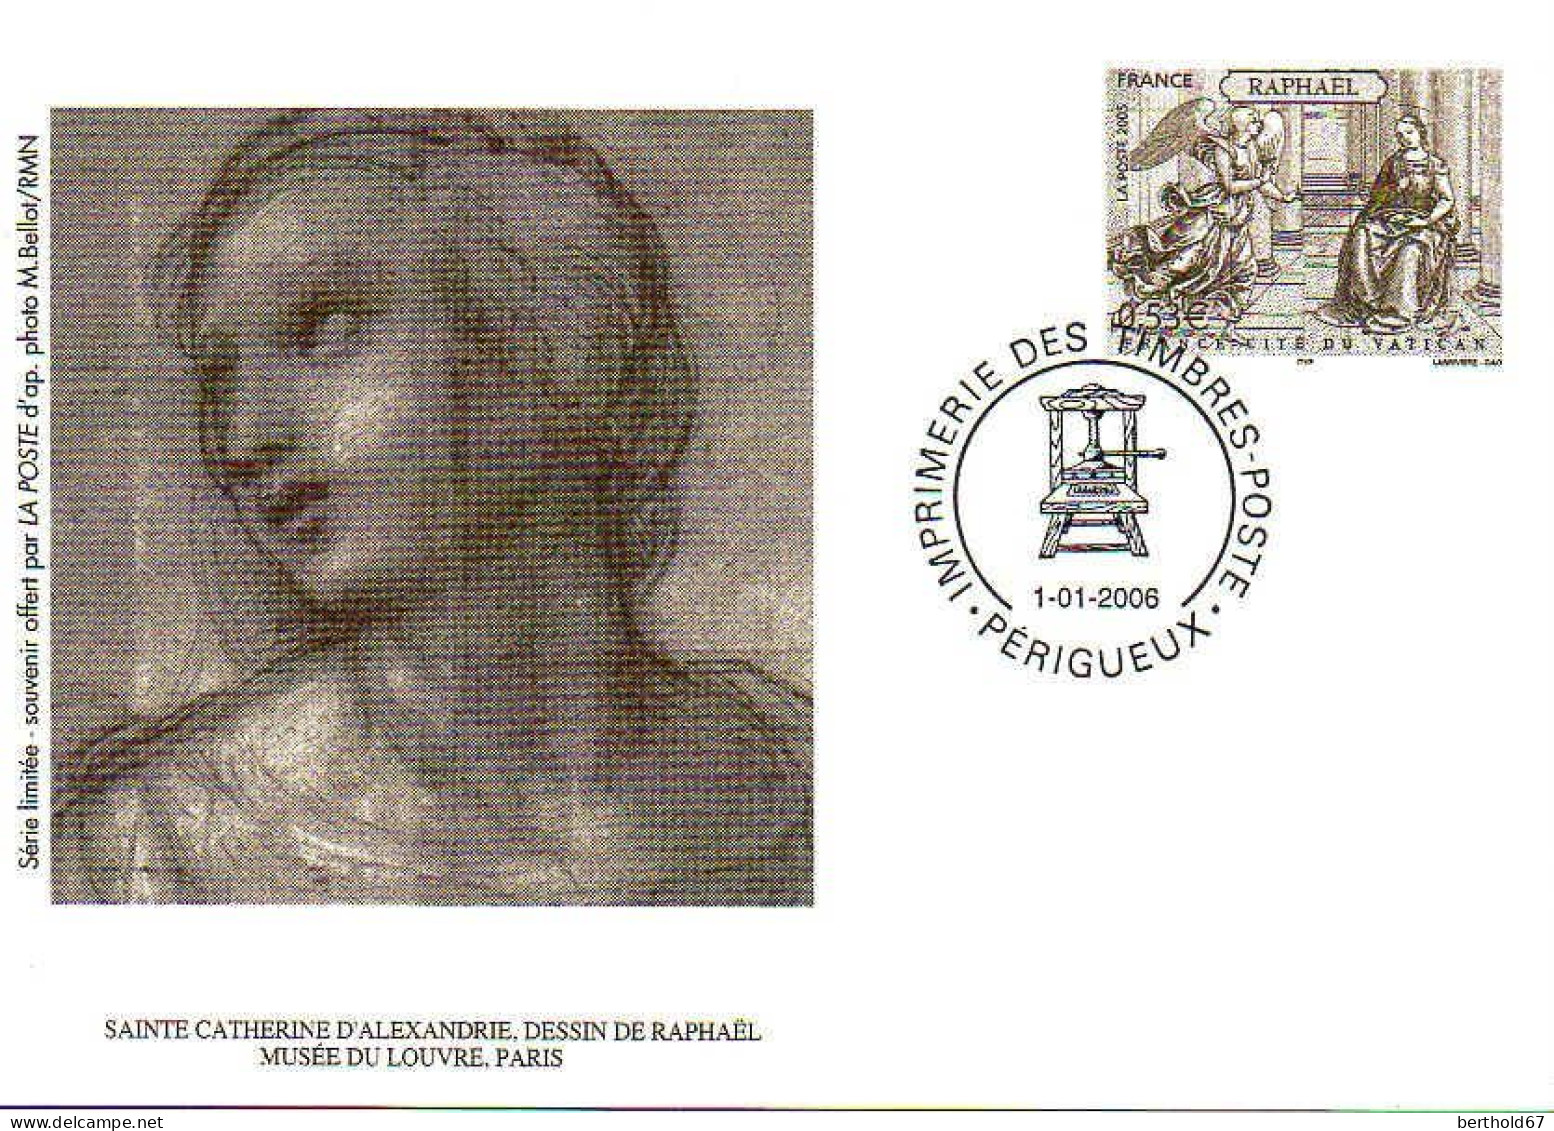 France Entier-P Carte (5010-CP) Raphaël France Cité Du Vatican - Official Stationery